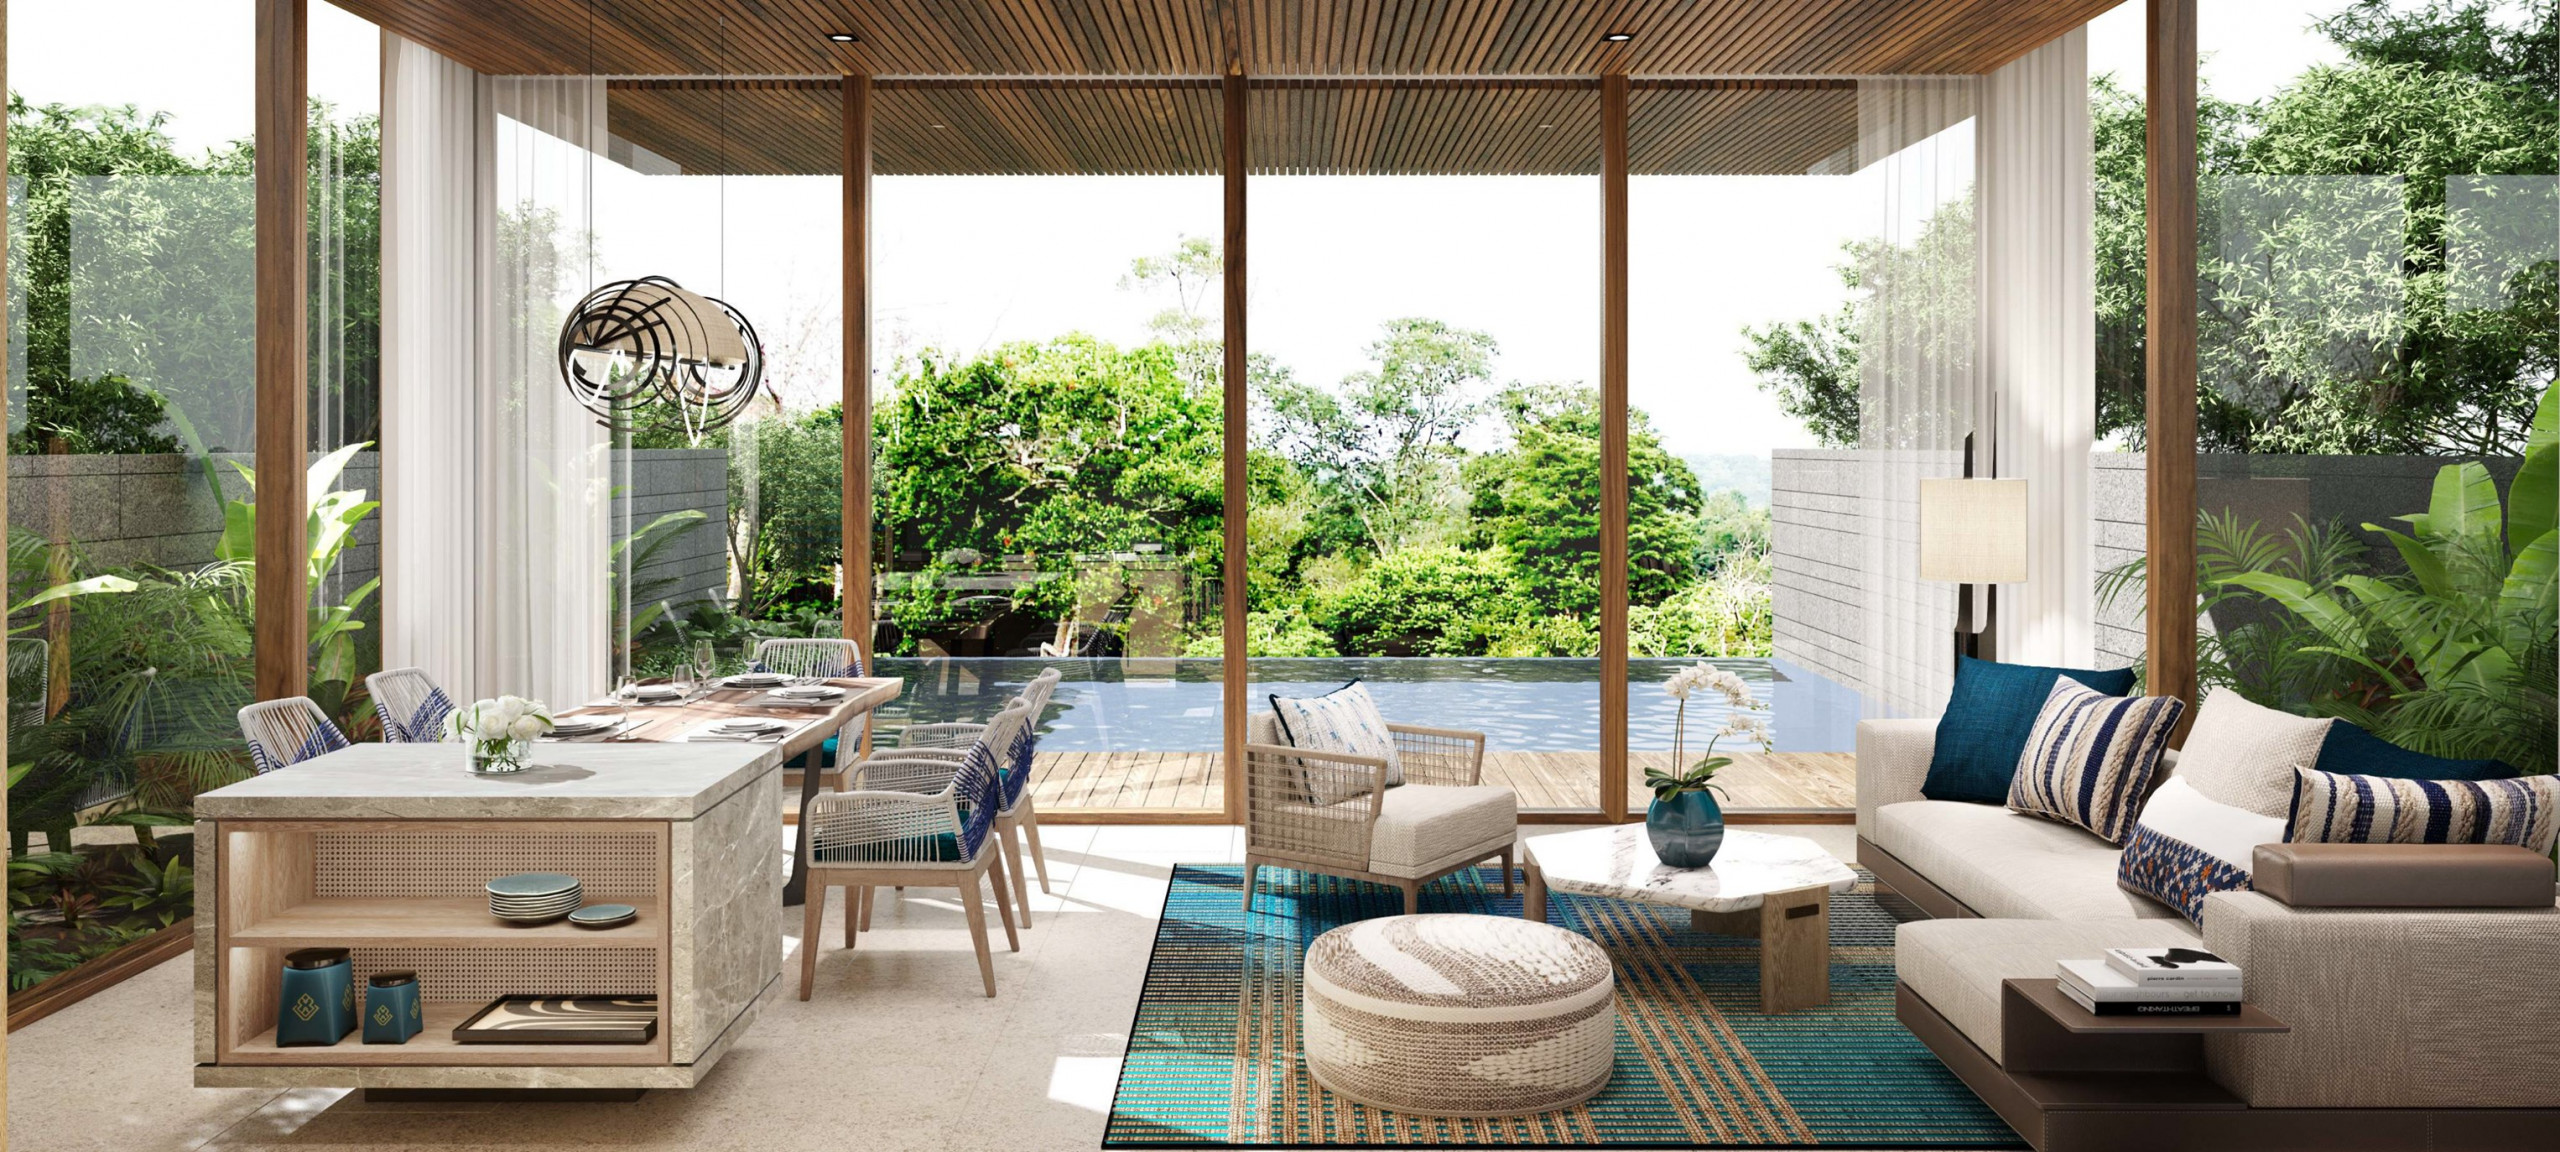 Thiết kế mang âm hưởng Bắc Mỹ kết hợp nội thất đậm chất bản địa giúp chủ nhà có trải nghiệm mới mẻ